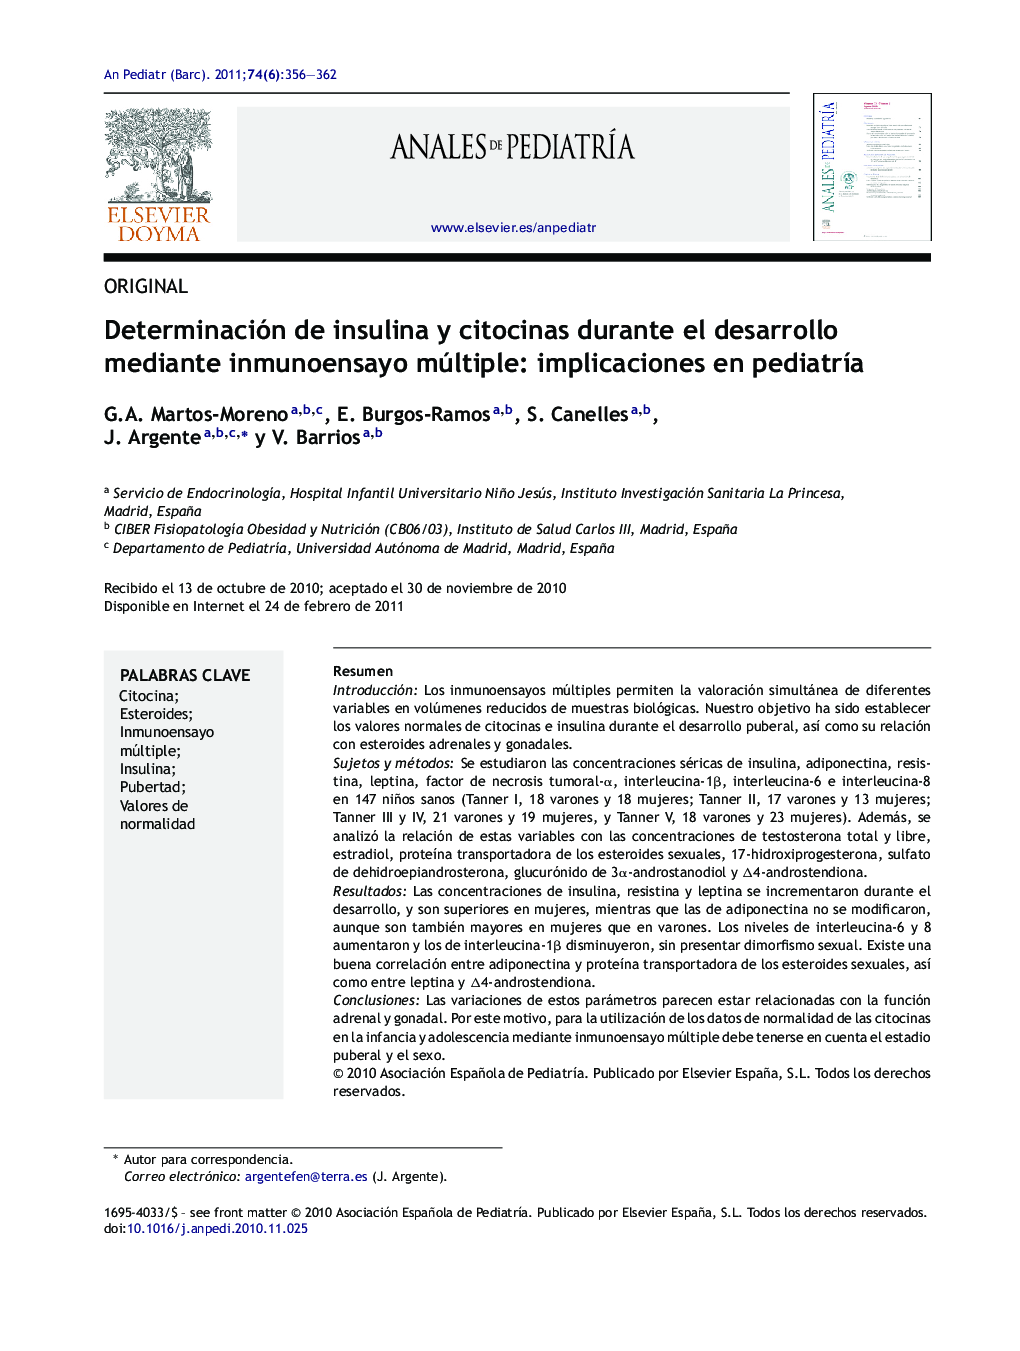 Determinación de insulina y citocinas durante el desarrollo mediante inmunoensayo múltiple: implicaciones en pediatrÃ­a